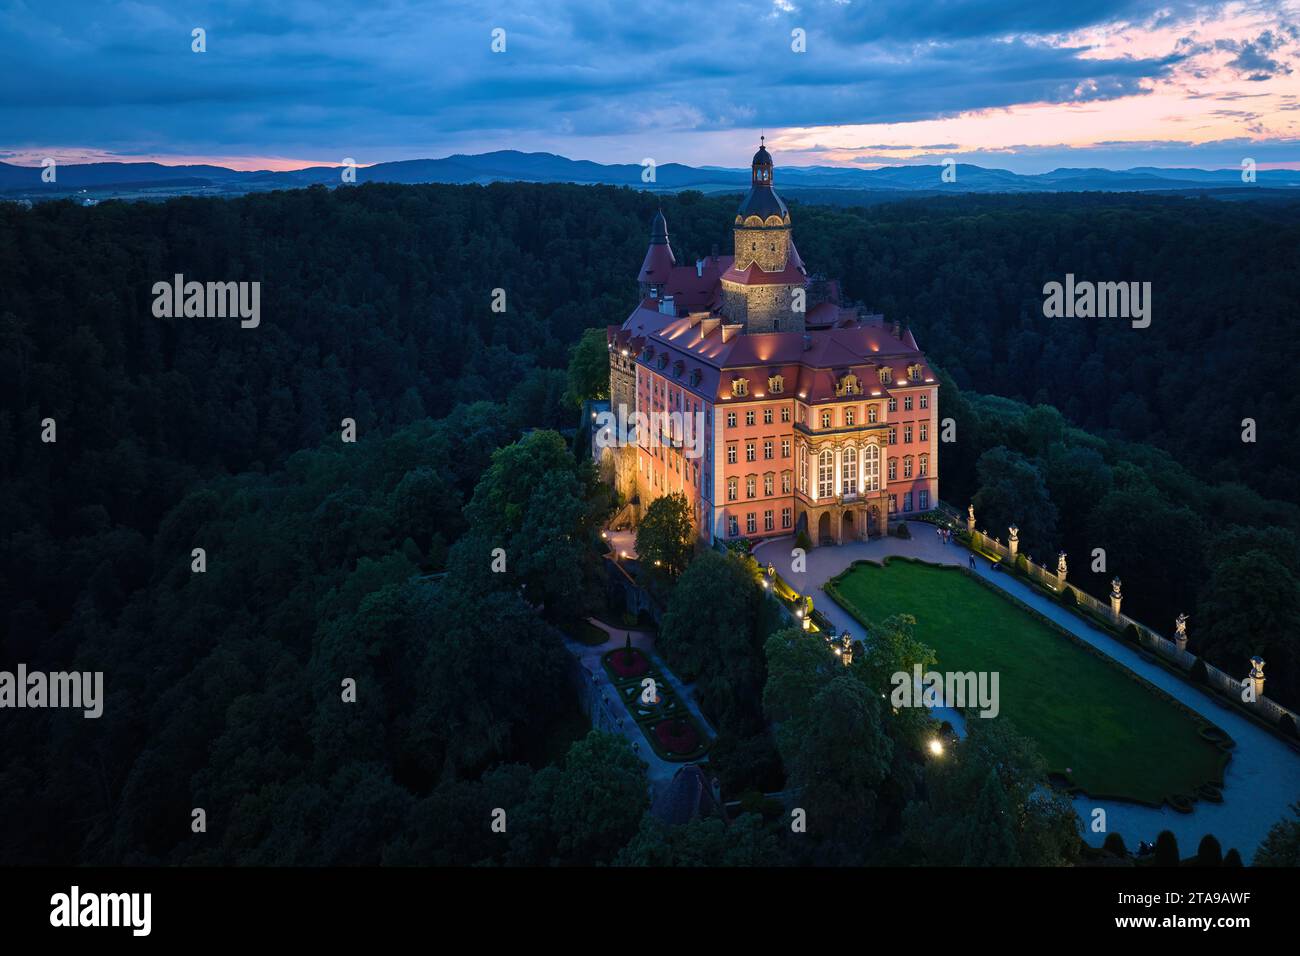 Vista aerea serale del castello illuminato di Ksiaz, Schloss Fürstenstein, un bellissimo castello che sorge su una roccia circondata dalla foresta nella bassa Slesia Foto Stock